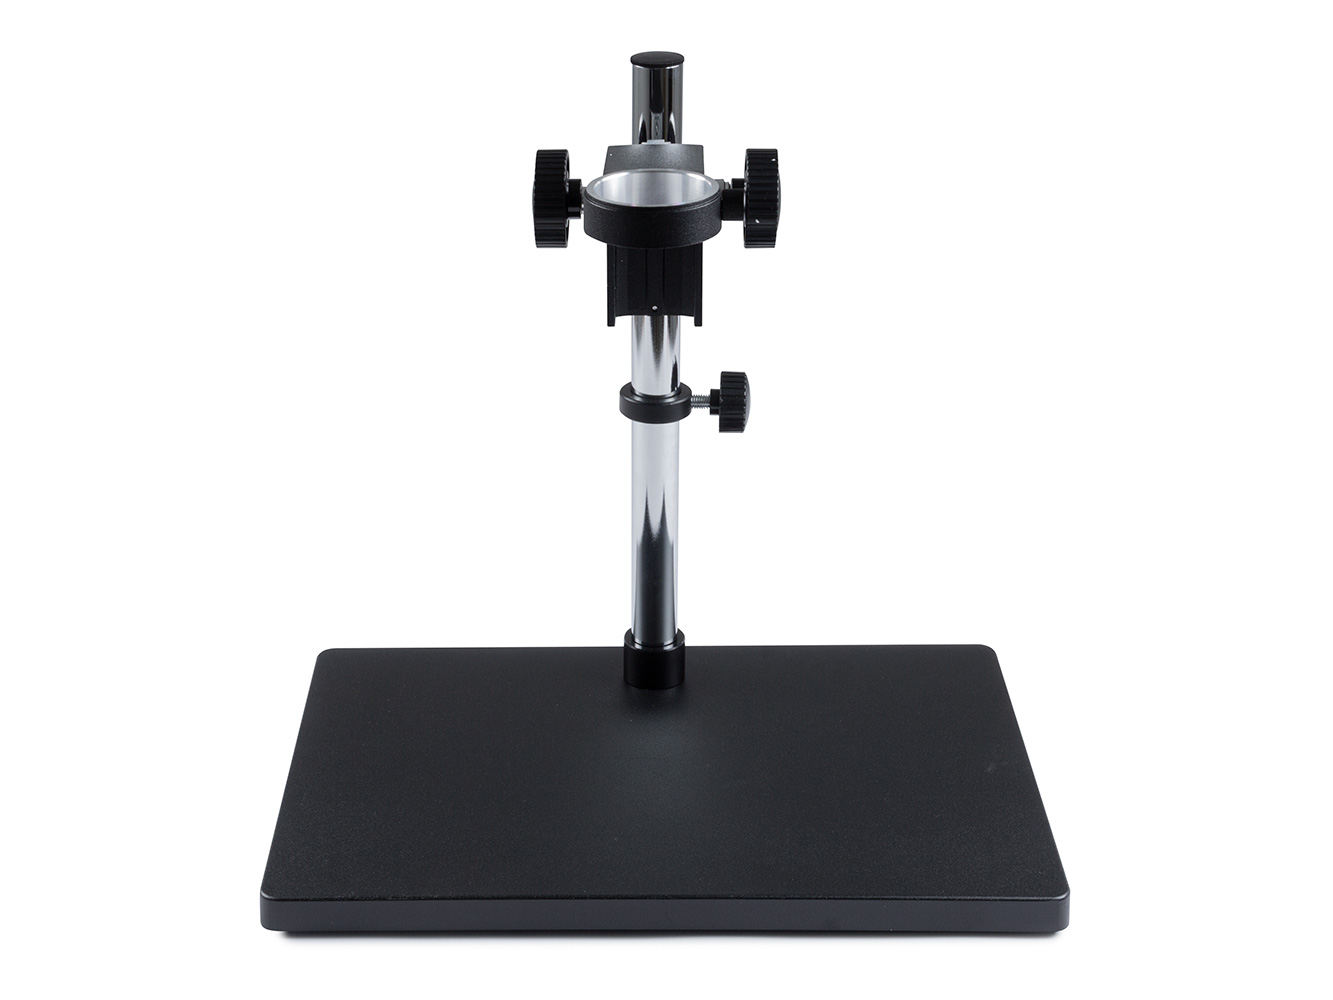 Kovový stojan se suportem pro uchycení optických soustav mikroskopů a kamer